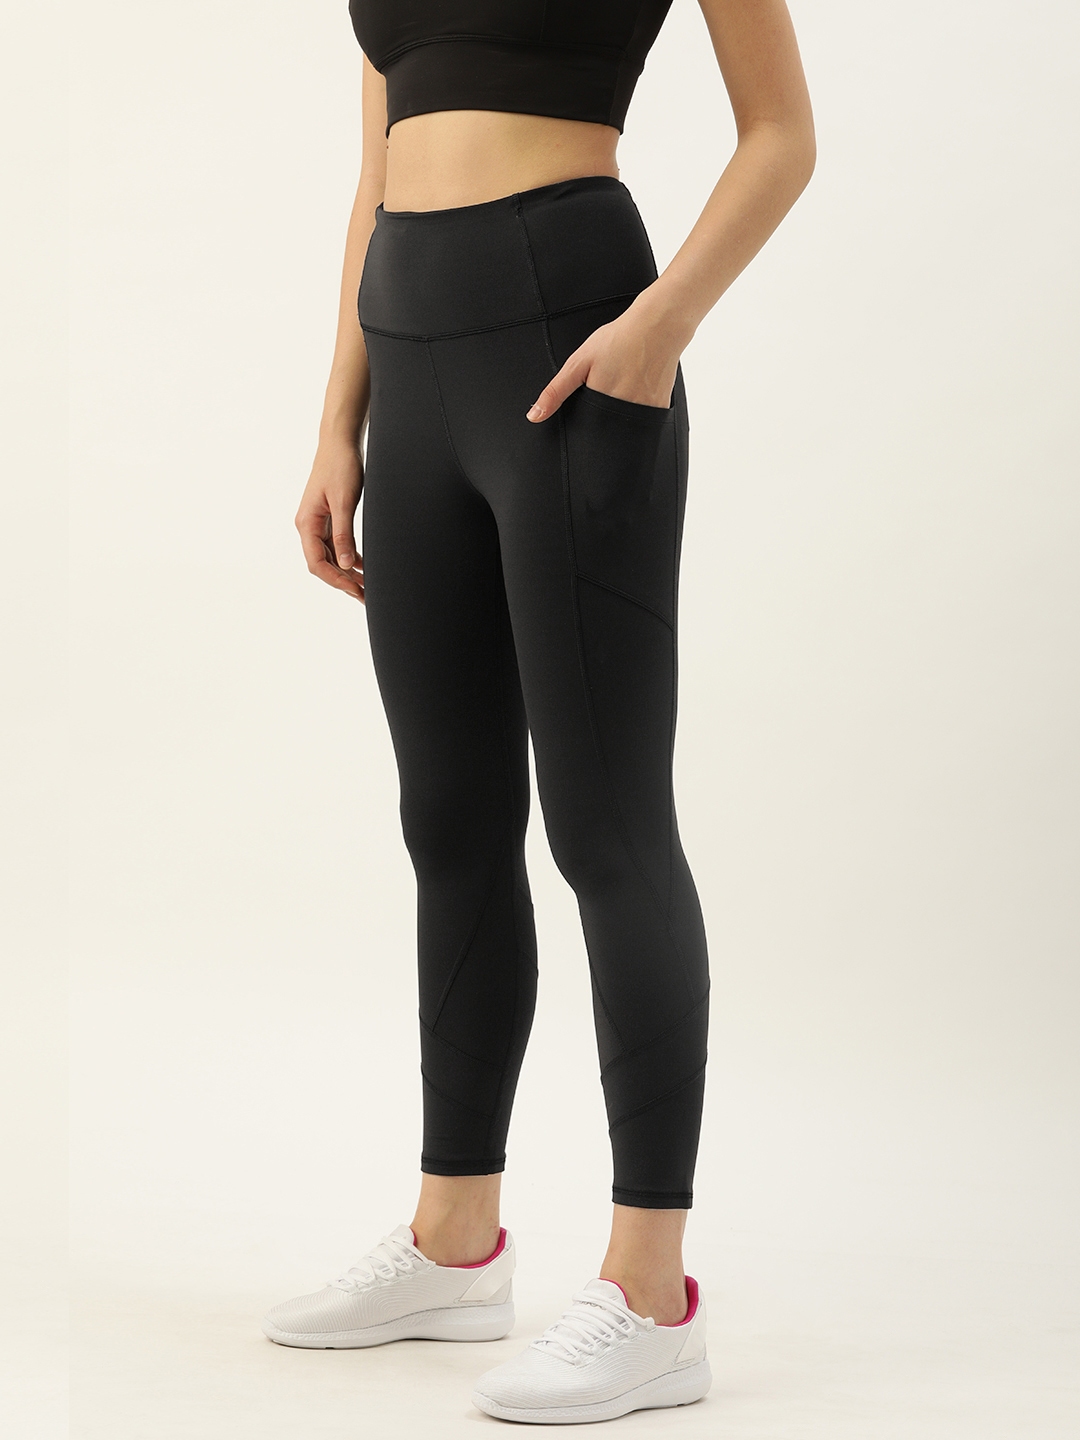 Buy Enamor Women Athleisure Black Dry Fit Legging E258 - Tights for ...